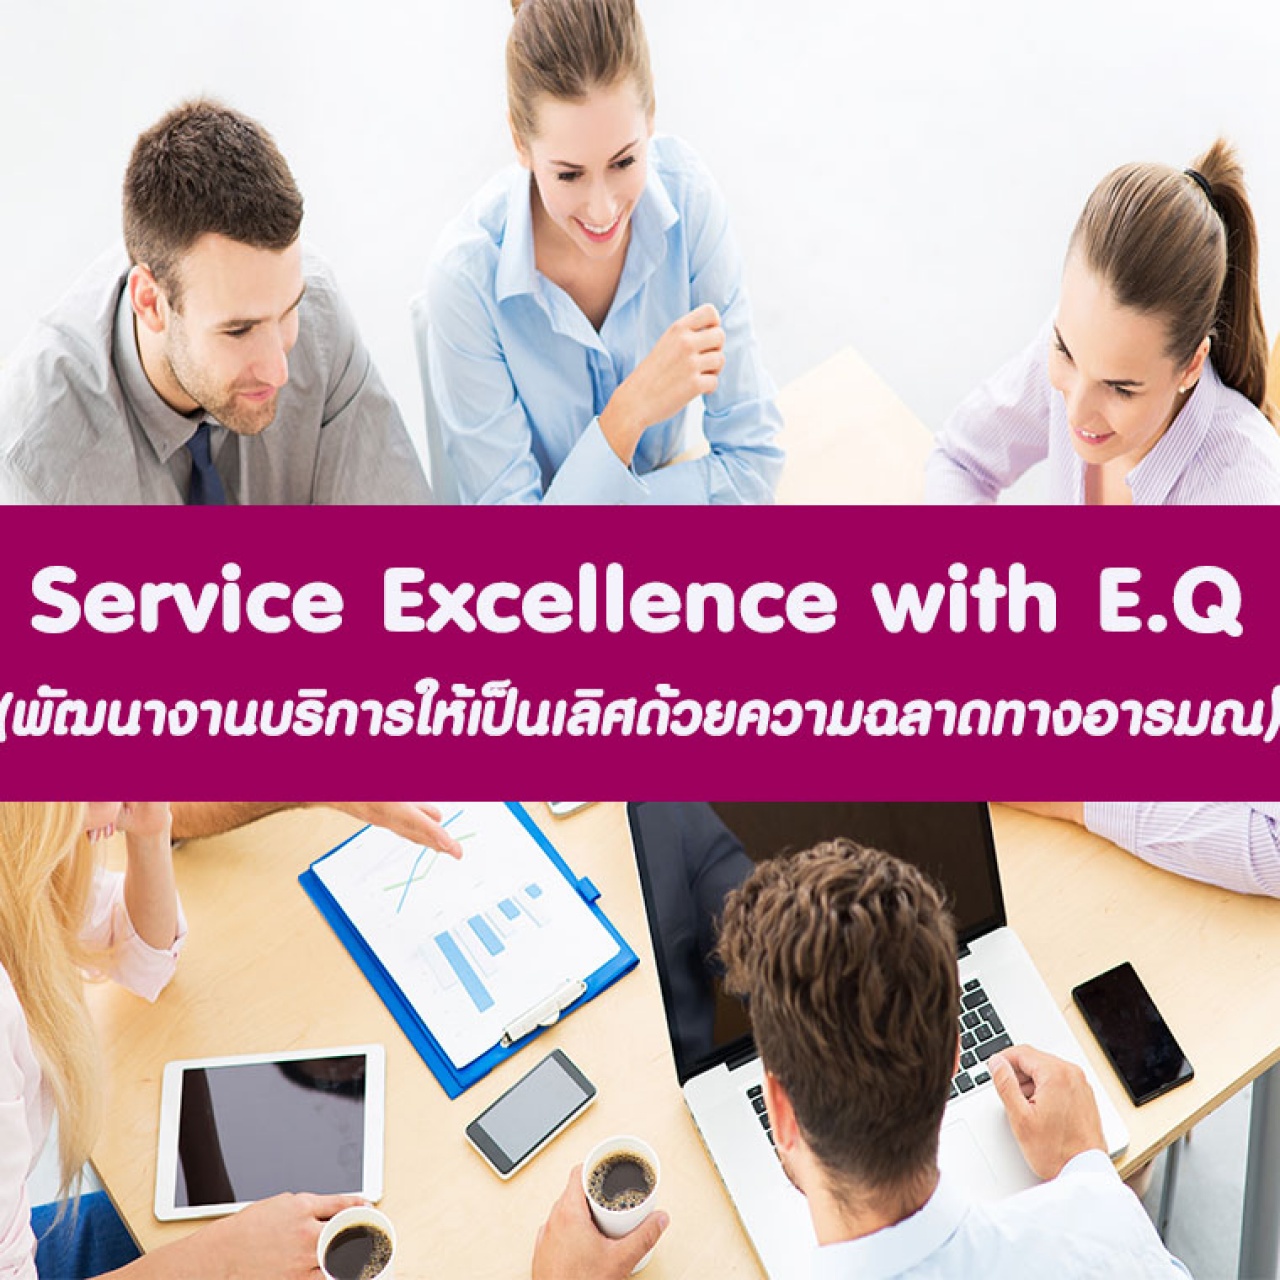 หลักสูตร Service Excellence with E.Q อบรม 5 ต.ค. 2565